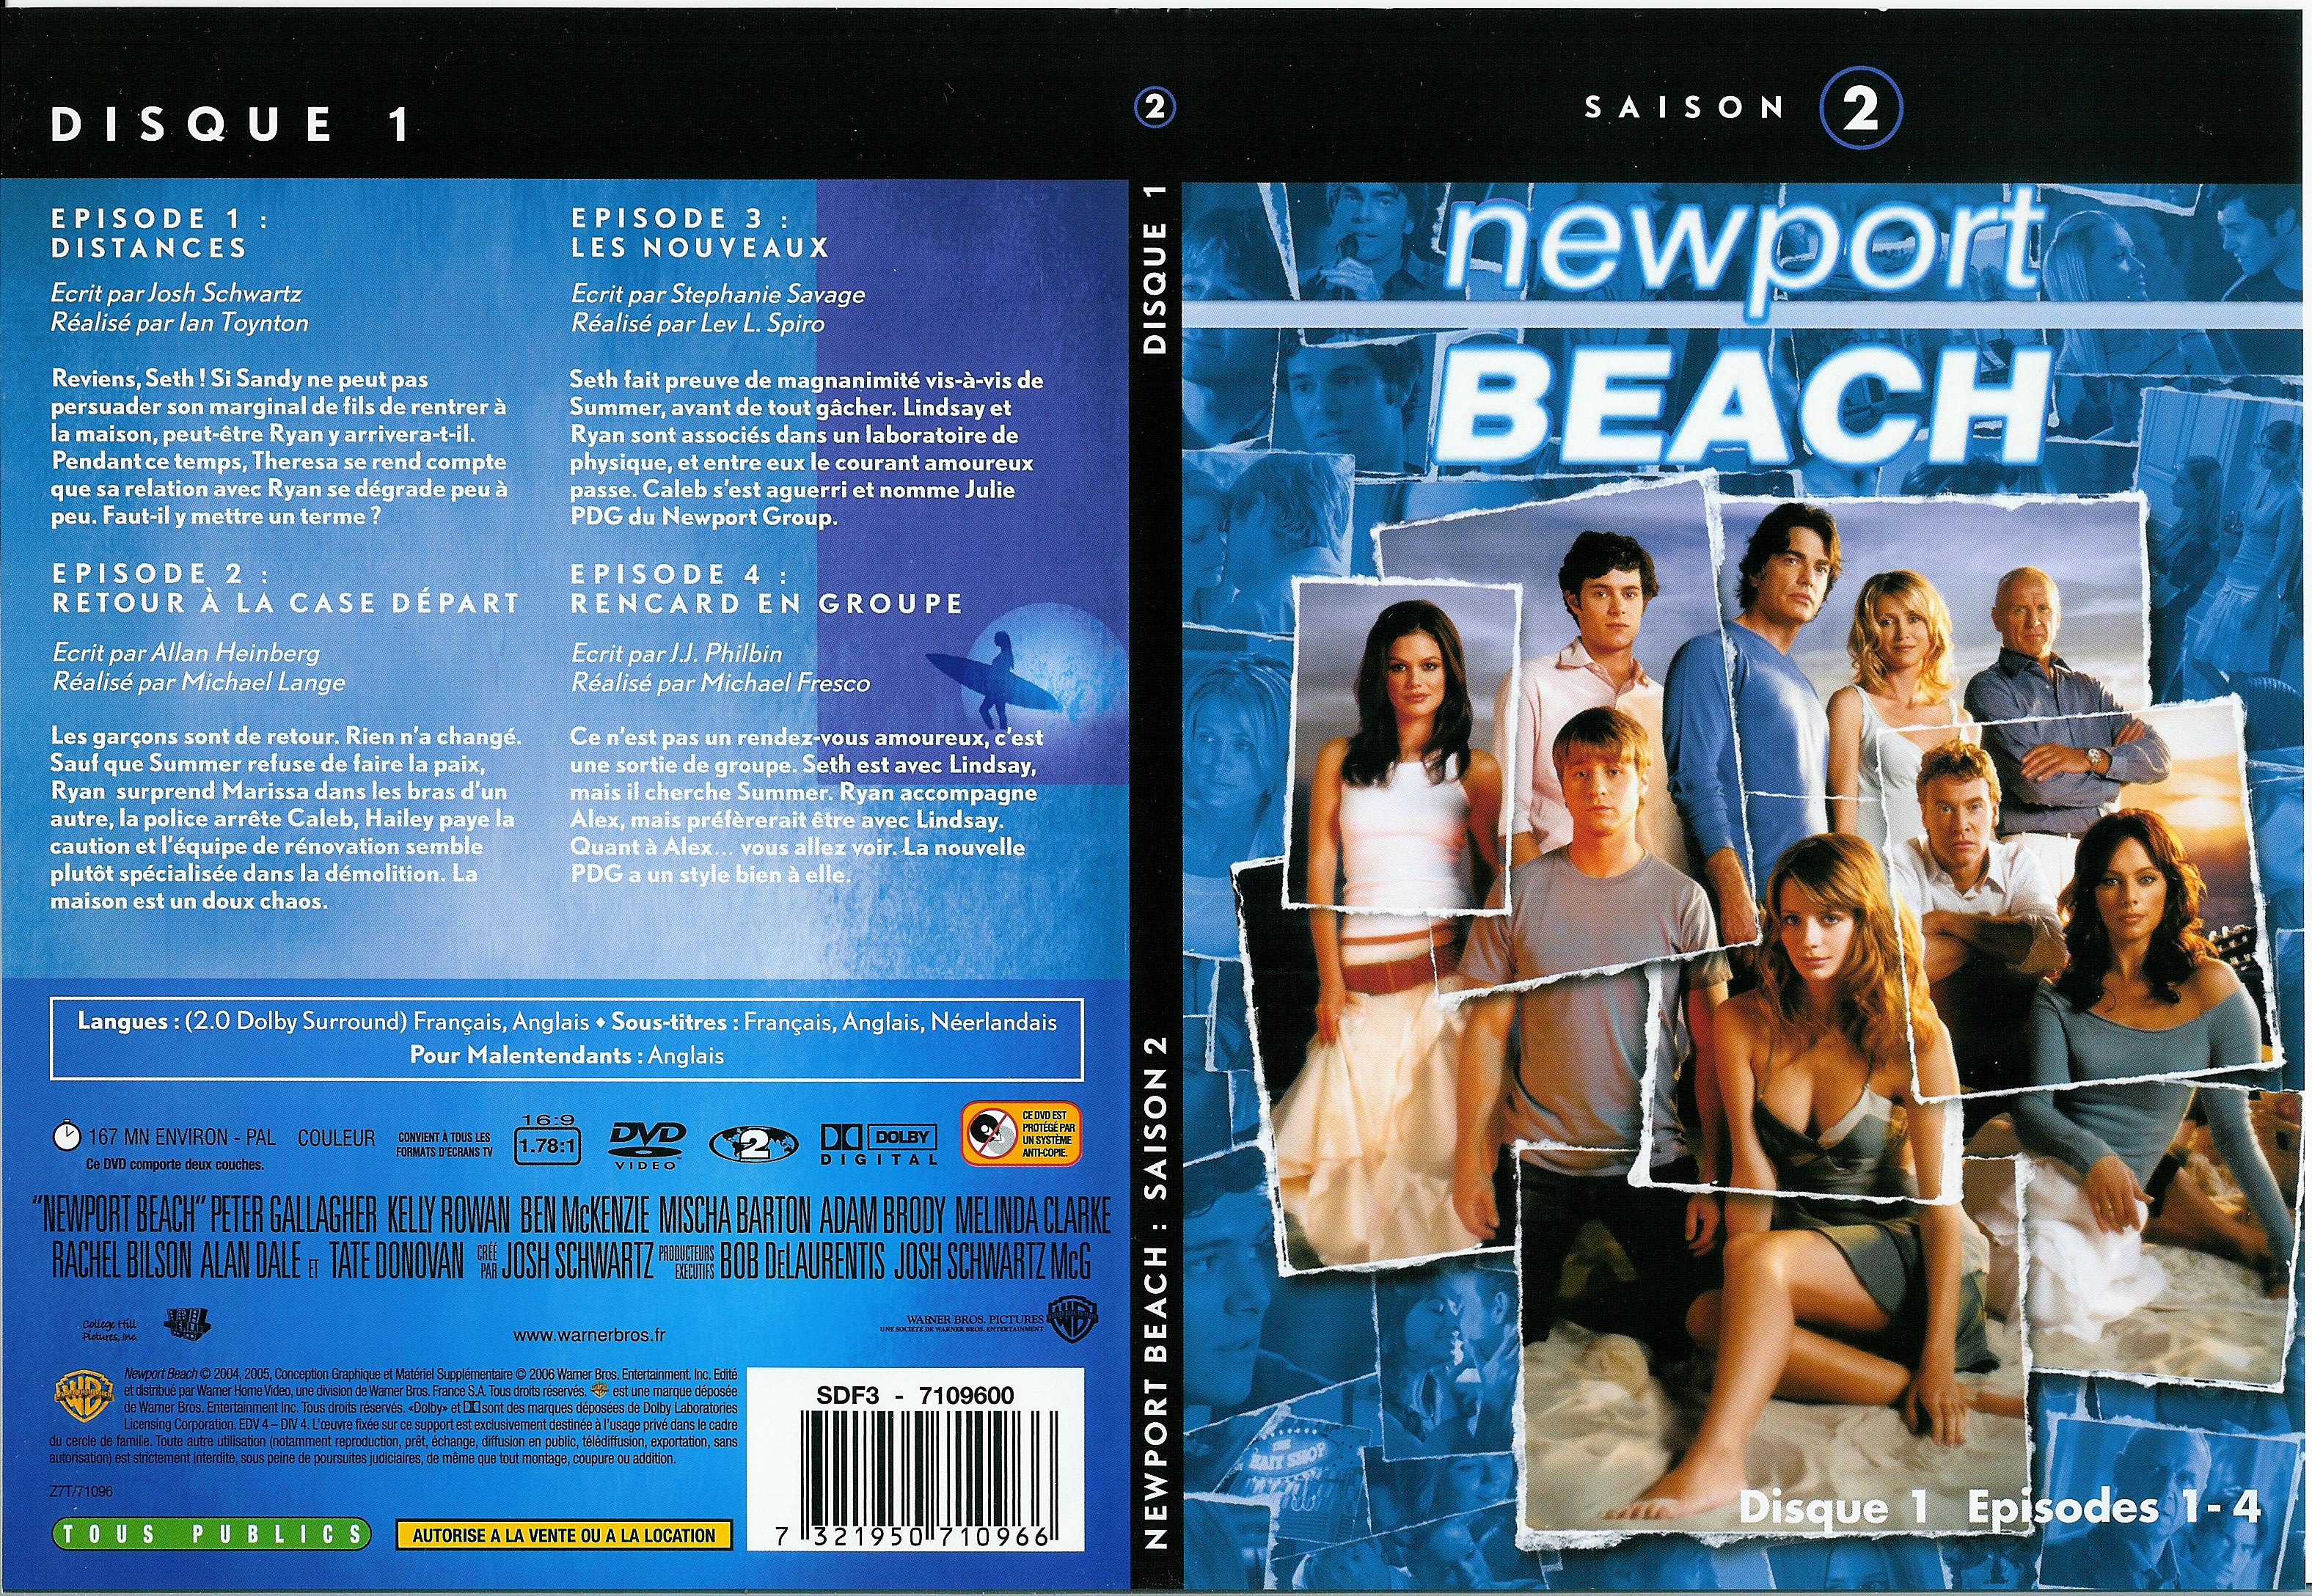 Jaquette DVD Newport Beach saison 2 vol 1